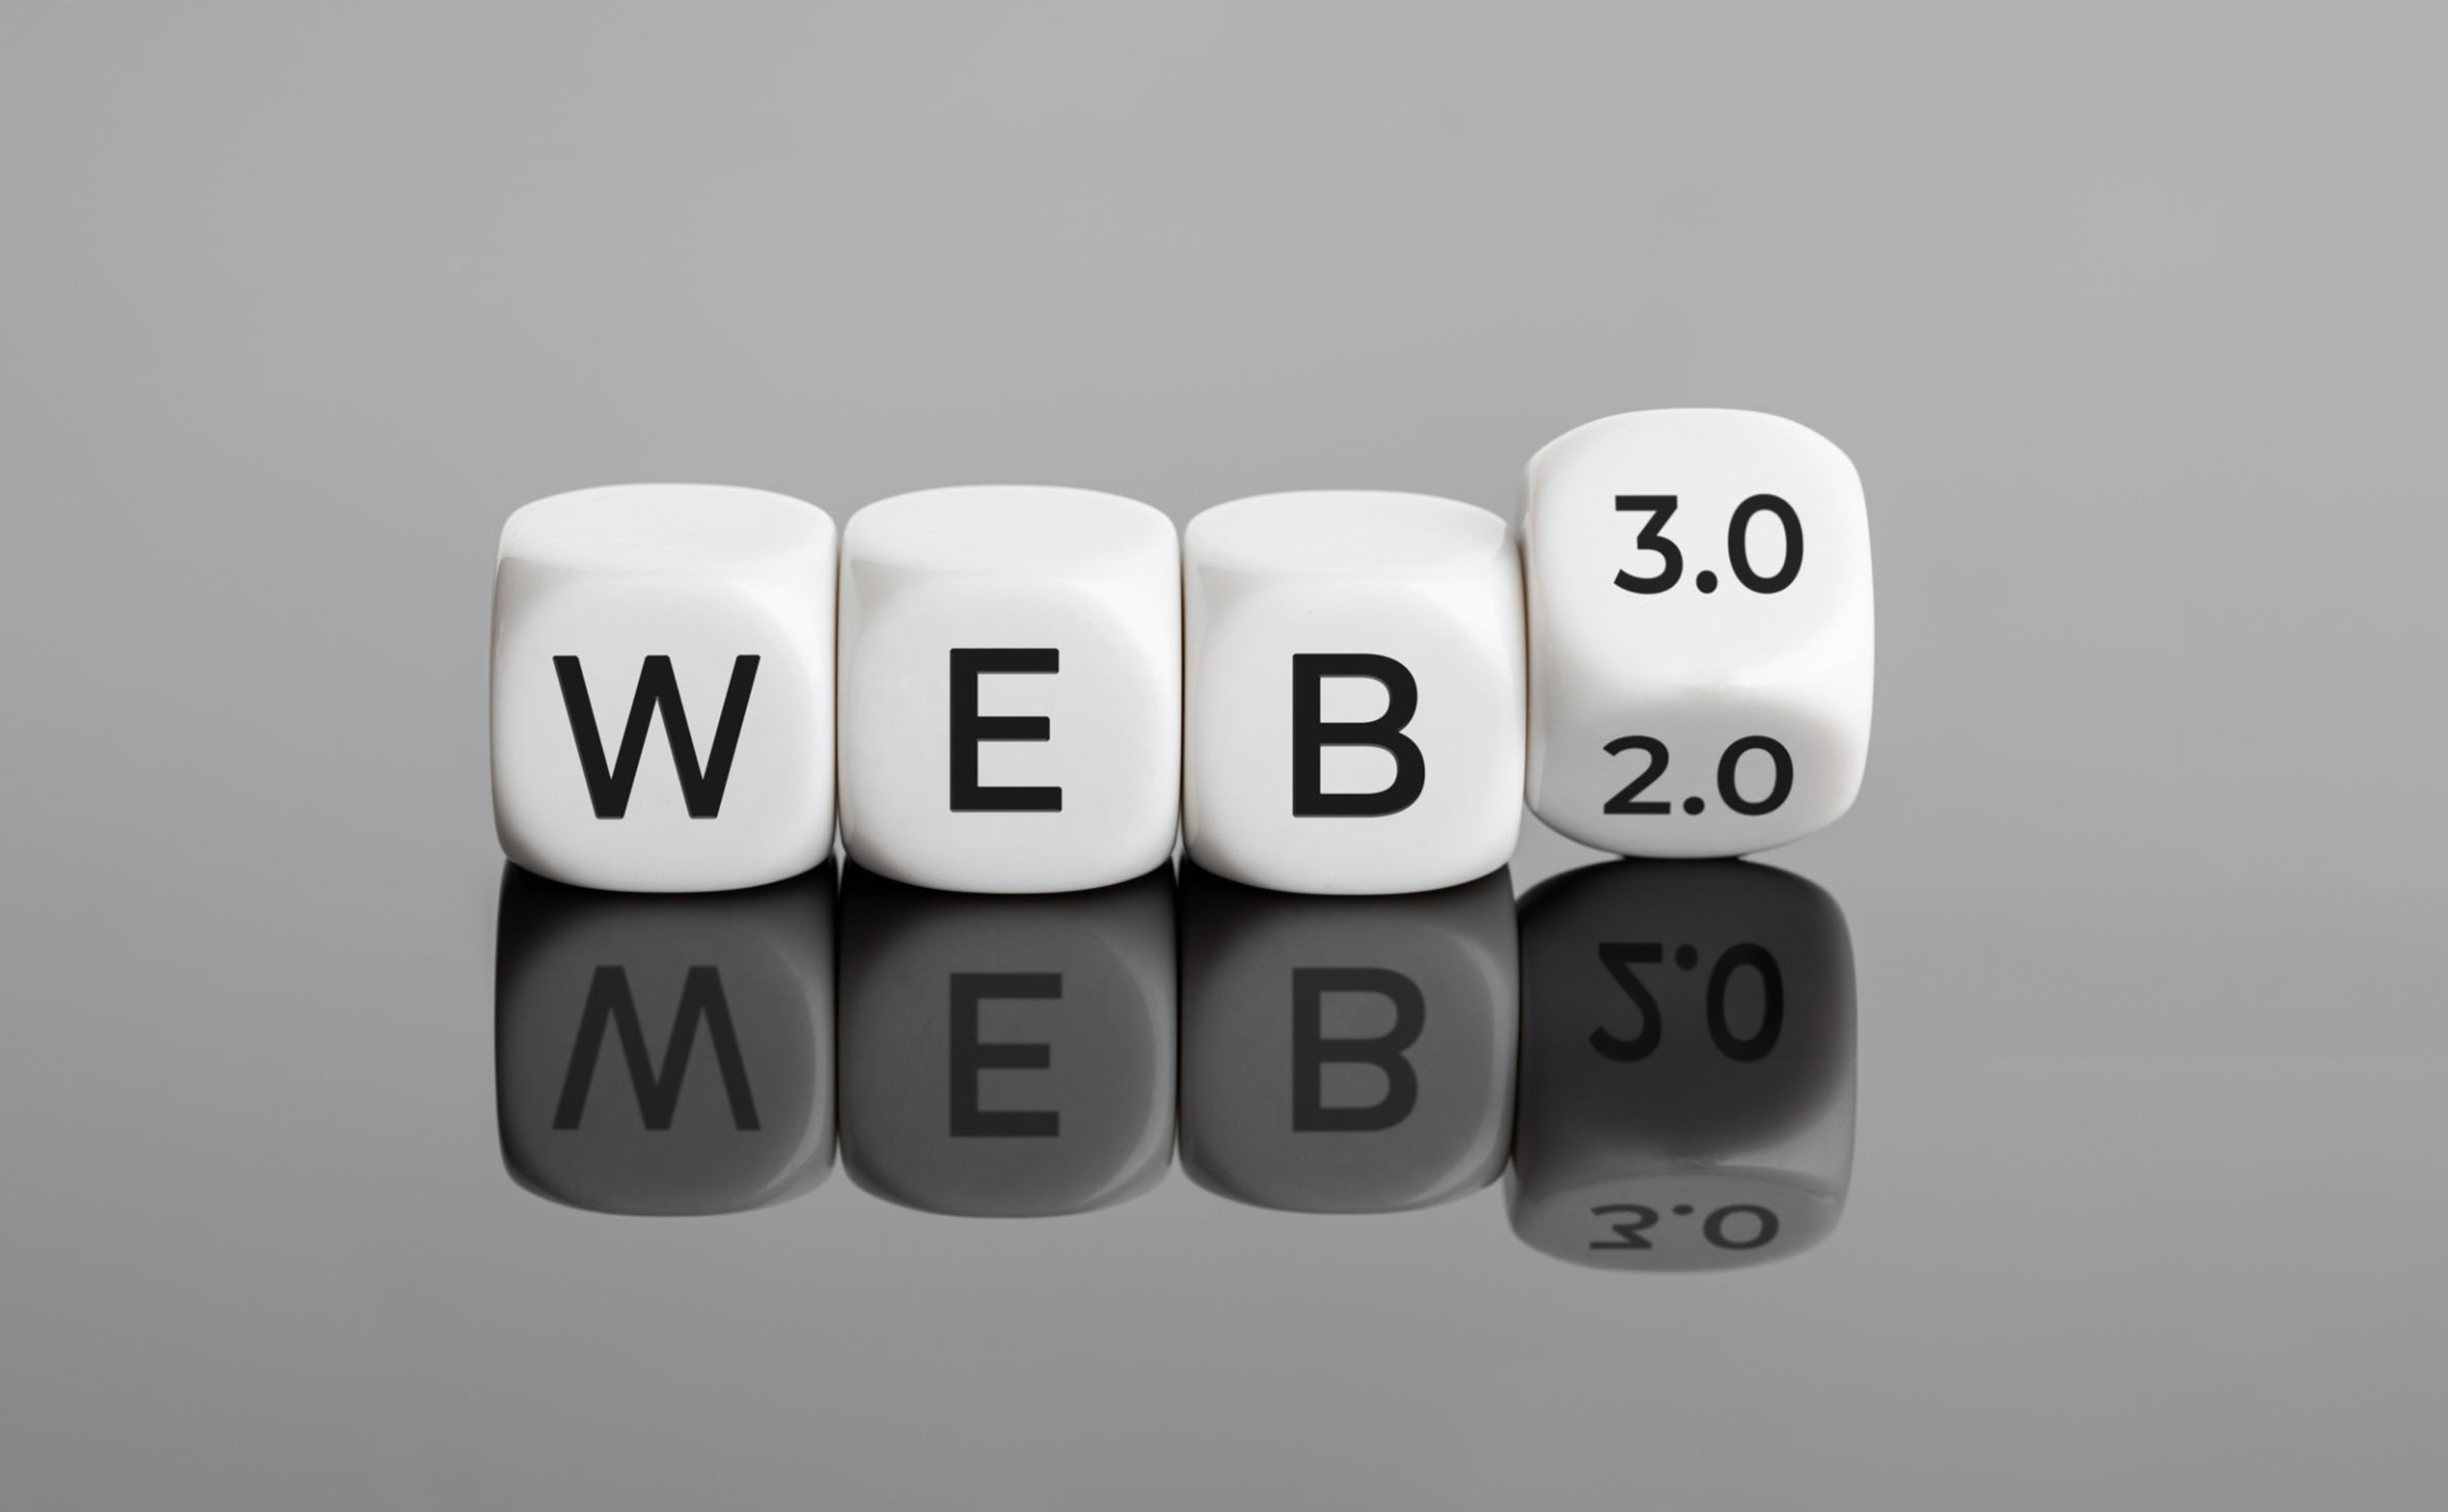 web 2.0 vs web 3.0